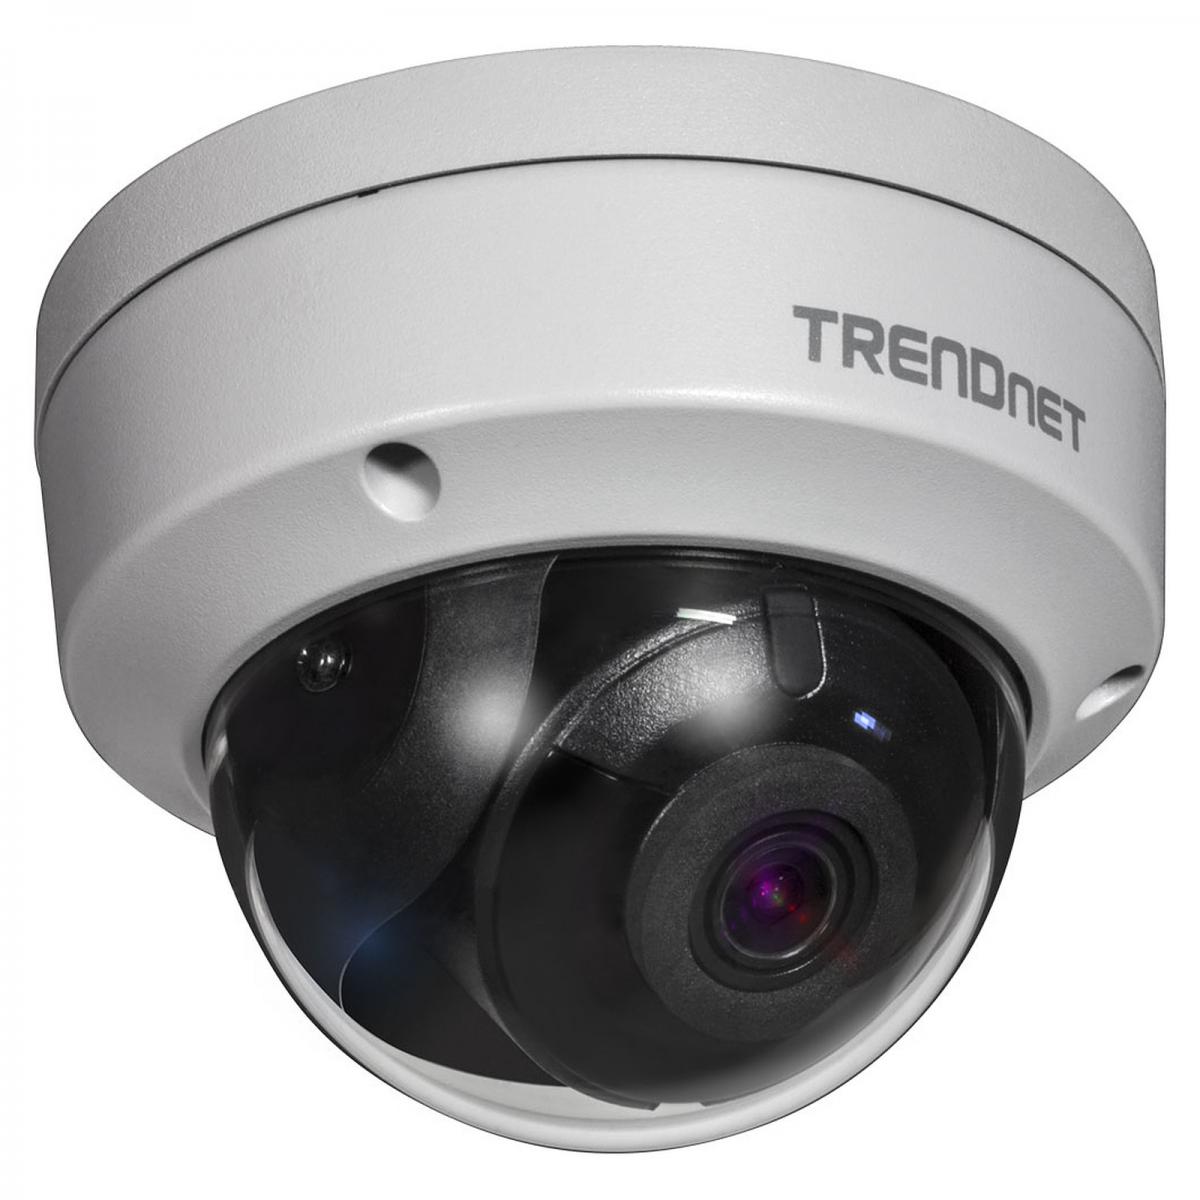 Trendnet - TRENDNET TV-IP1319PI - Caméra de surveillance connectée